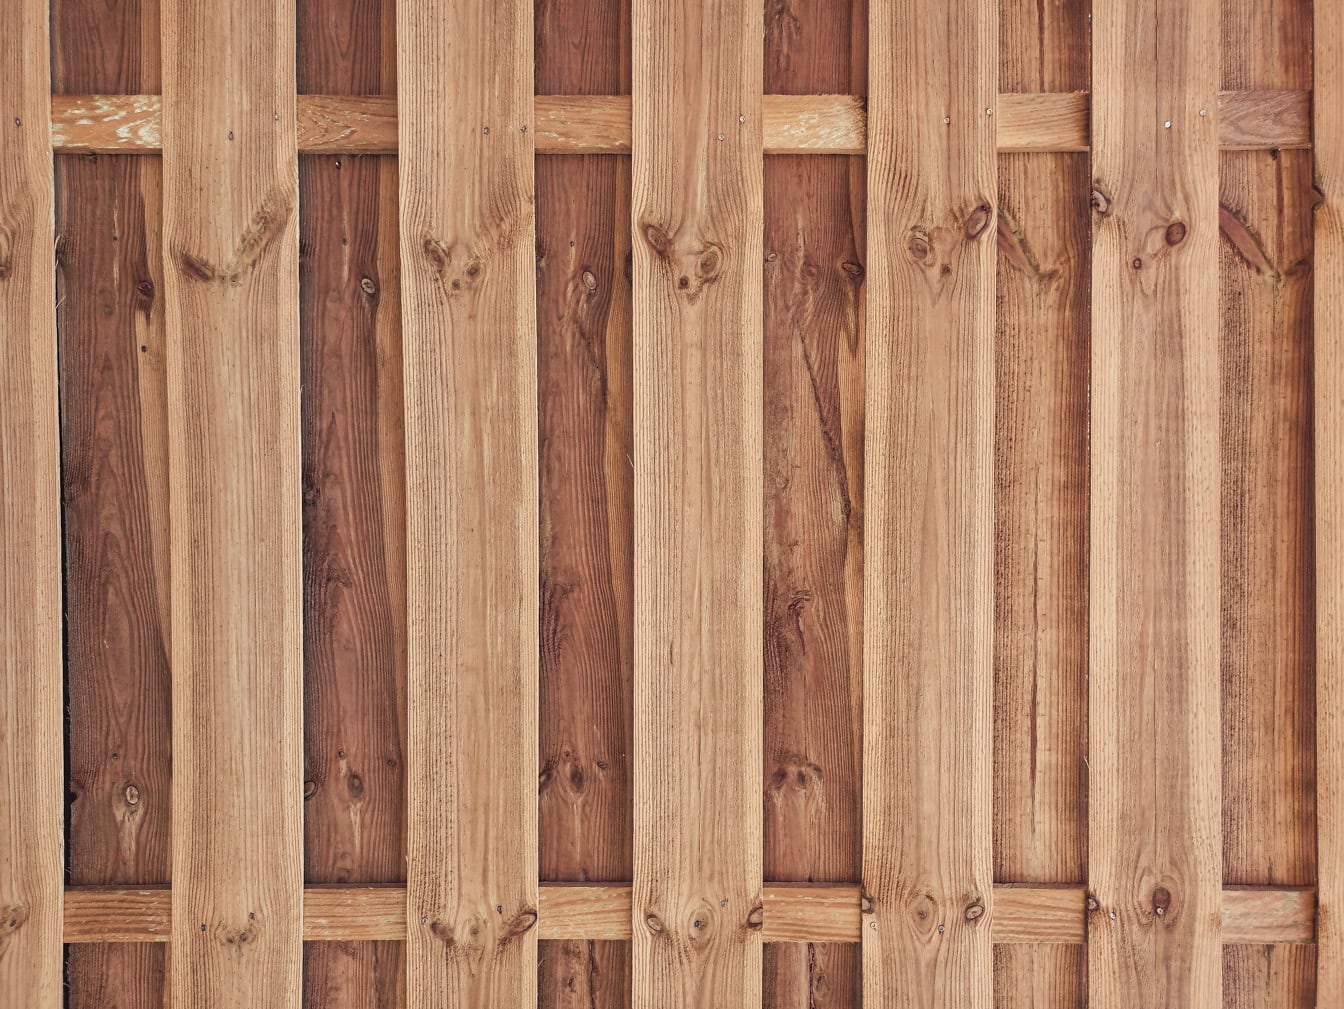 Um painel de madeira feito de ripas de madeira de lei empilhadas verticalmente em forma de cerca de piquete com fundo feito de tábuas com nós